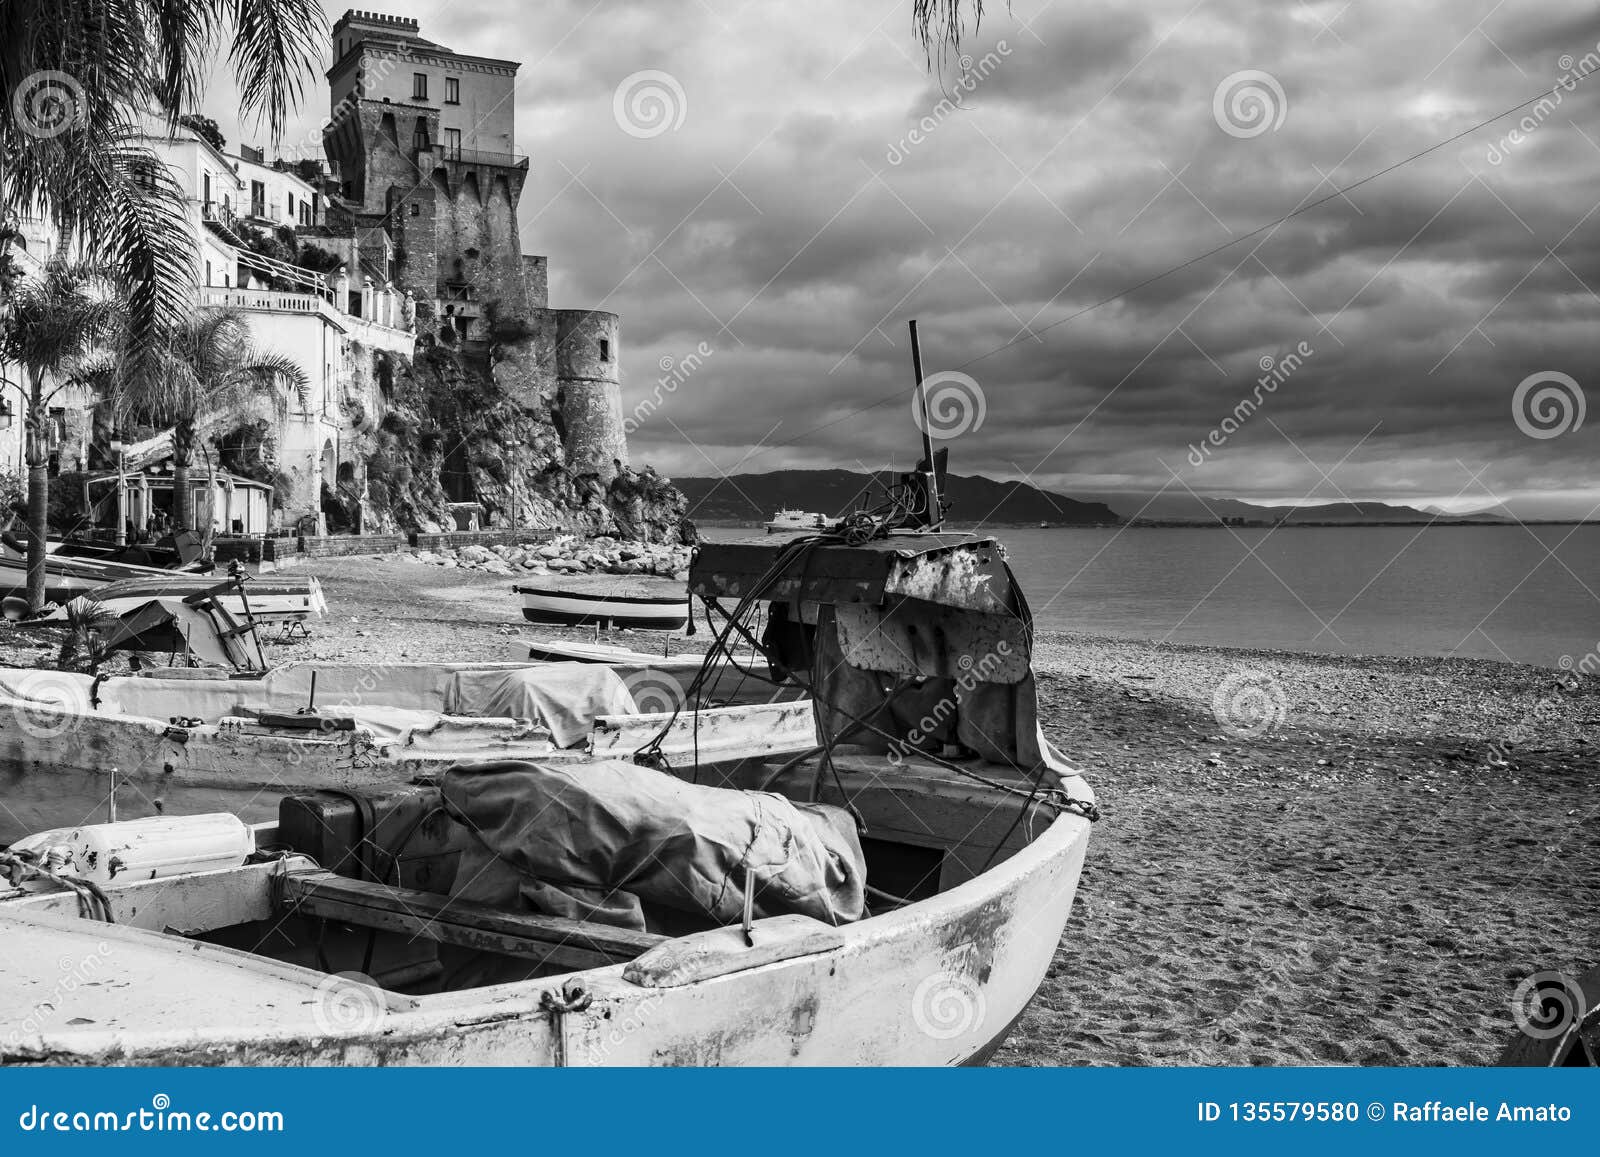 cetara old fishing village amalfi coast